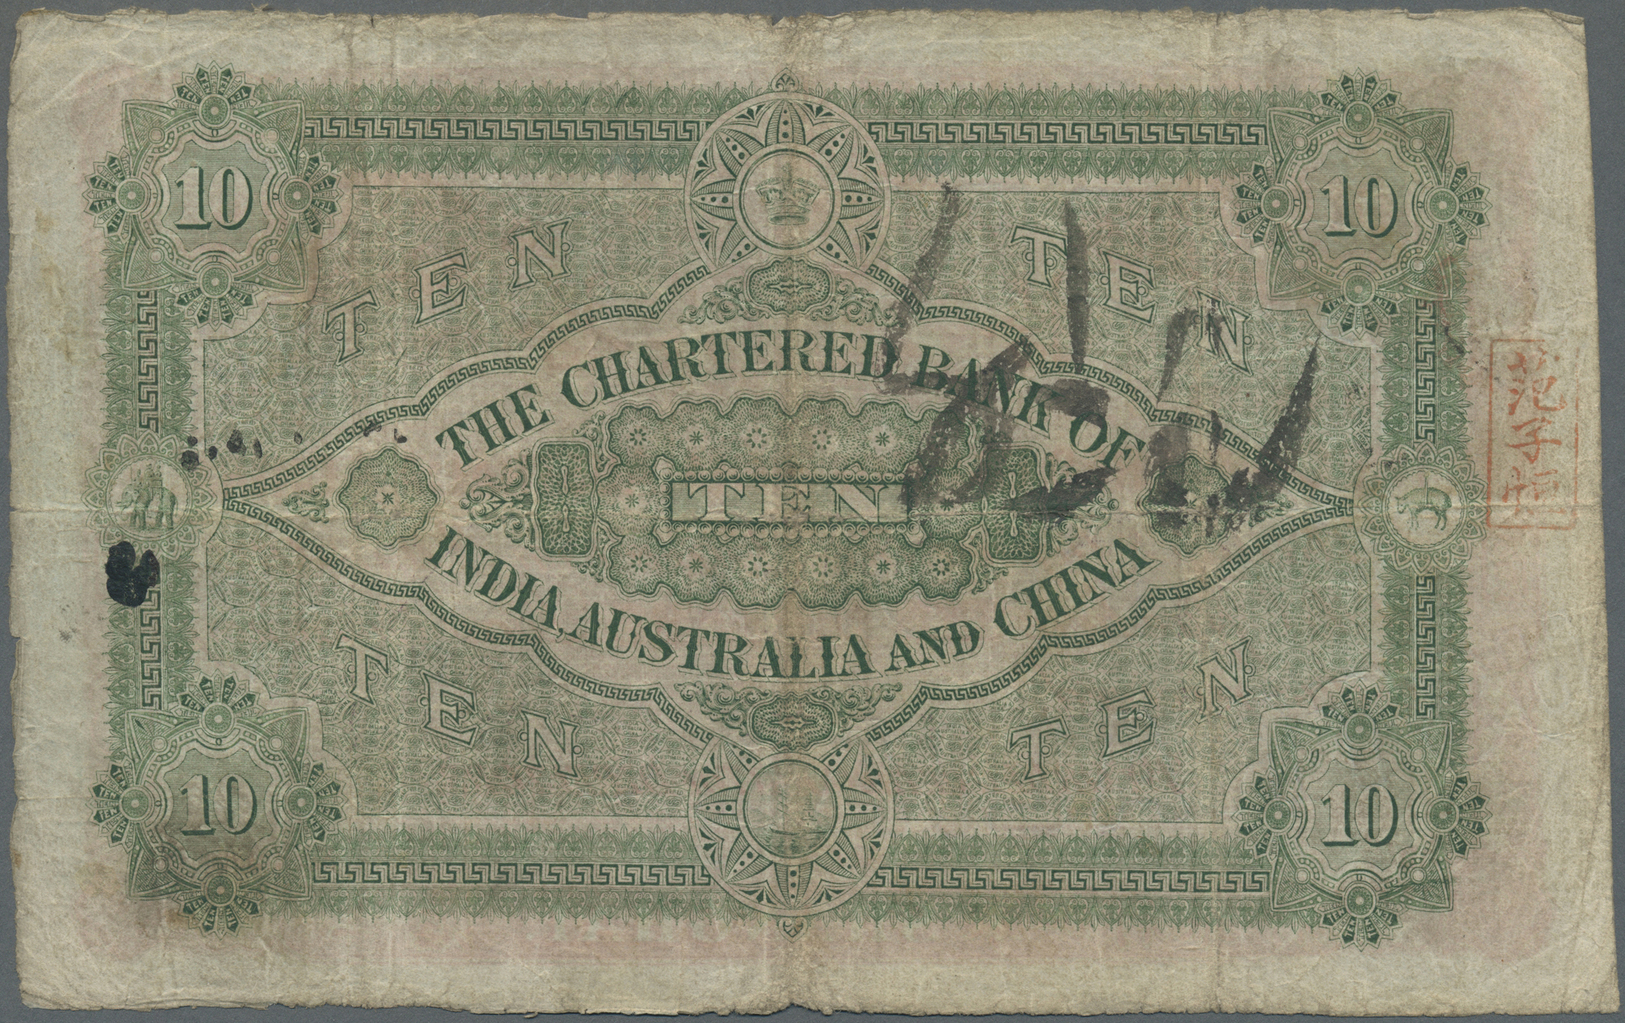 00996 Hong Kong: Chartered Bank Of India, Australia & China 10 Dollars June 10th 1913, P.35, Highly Rare Note In Nice Or - Hong Kong